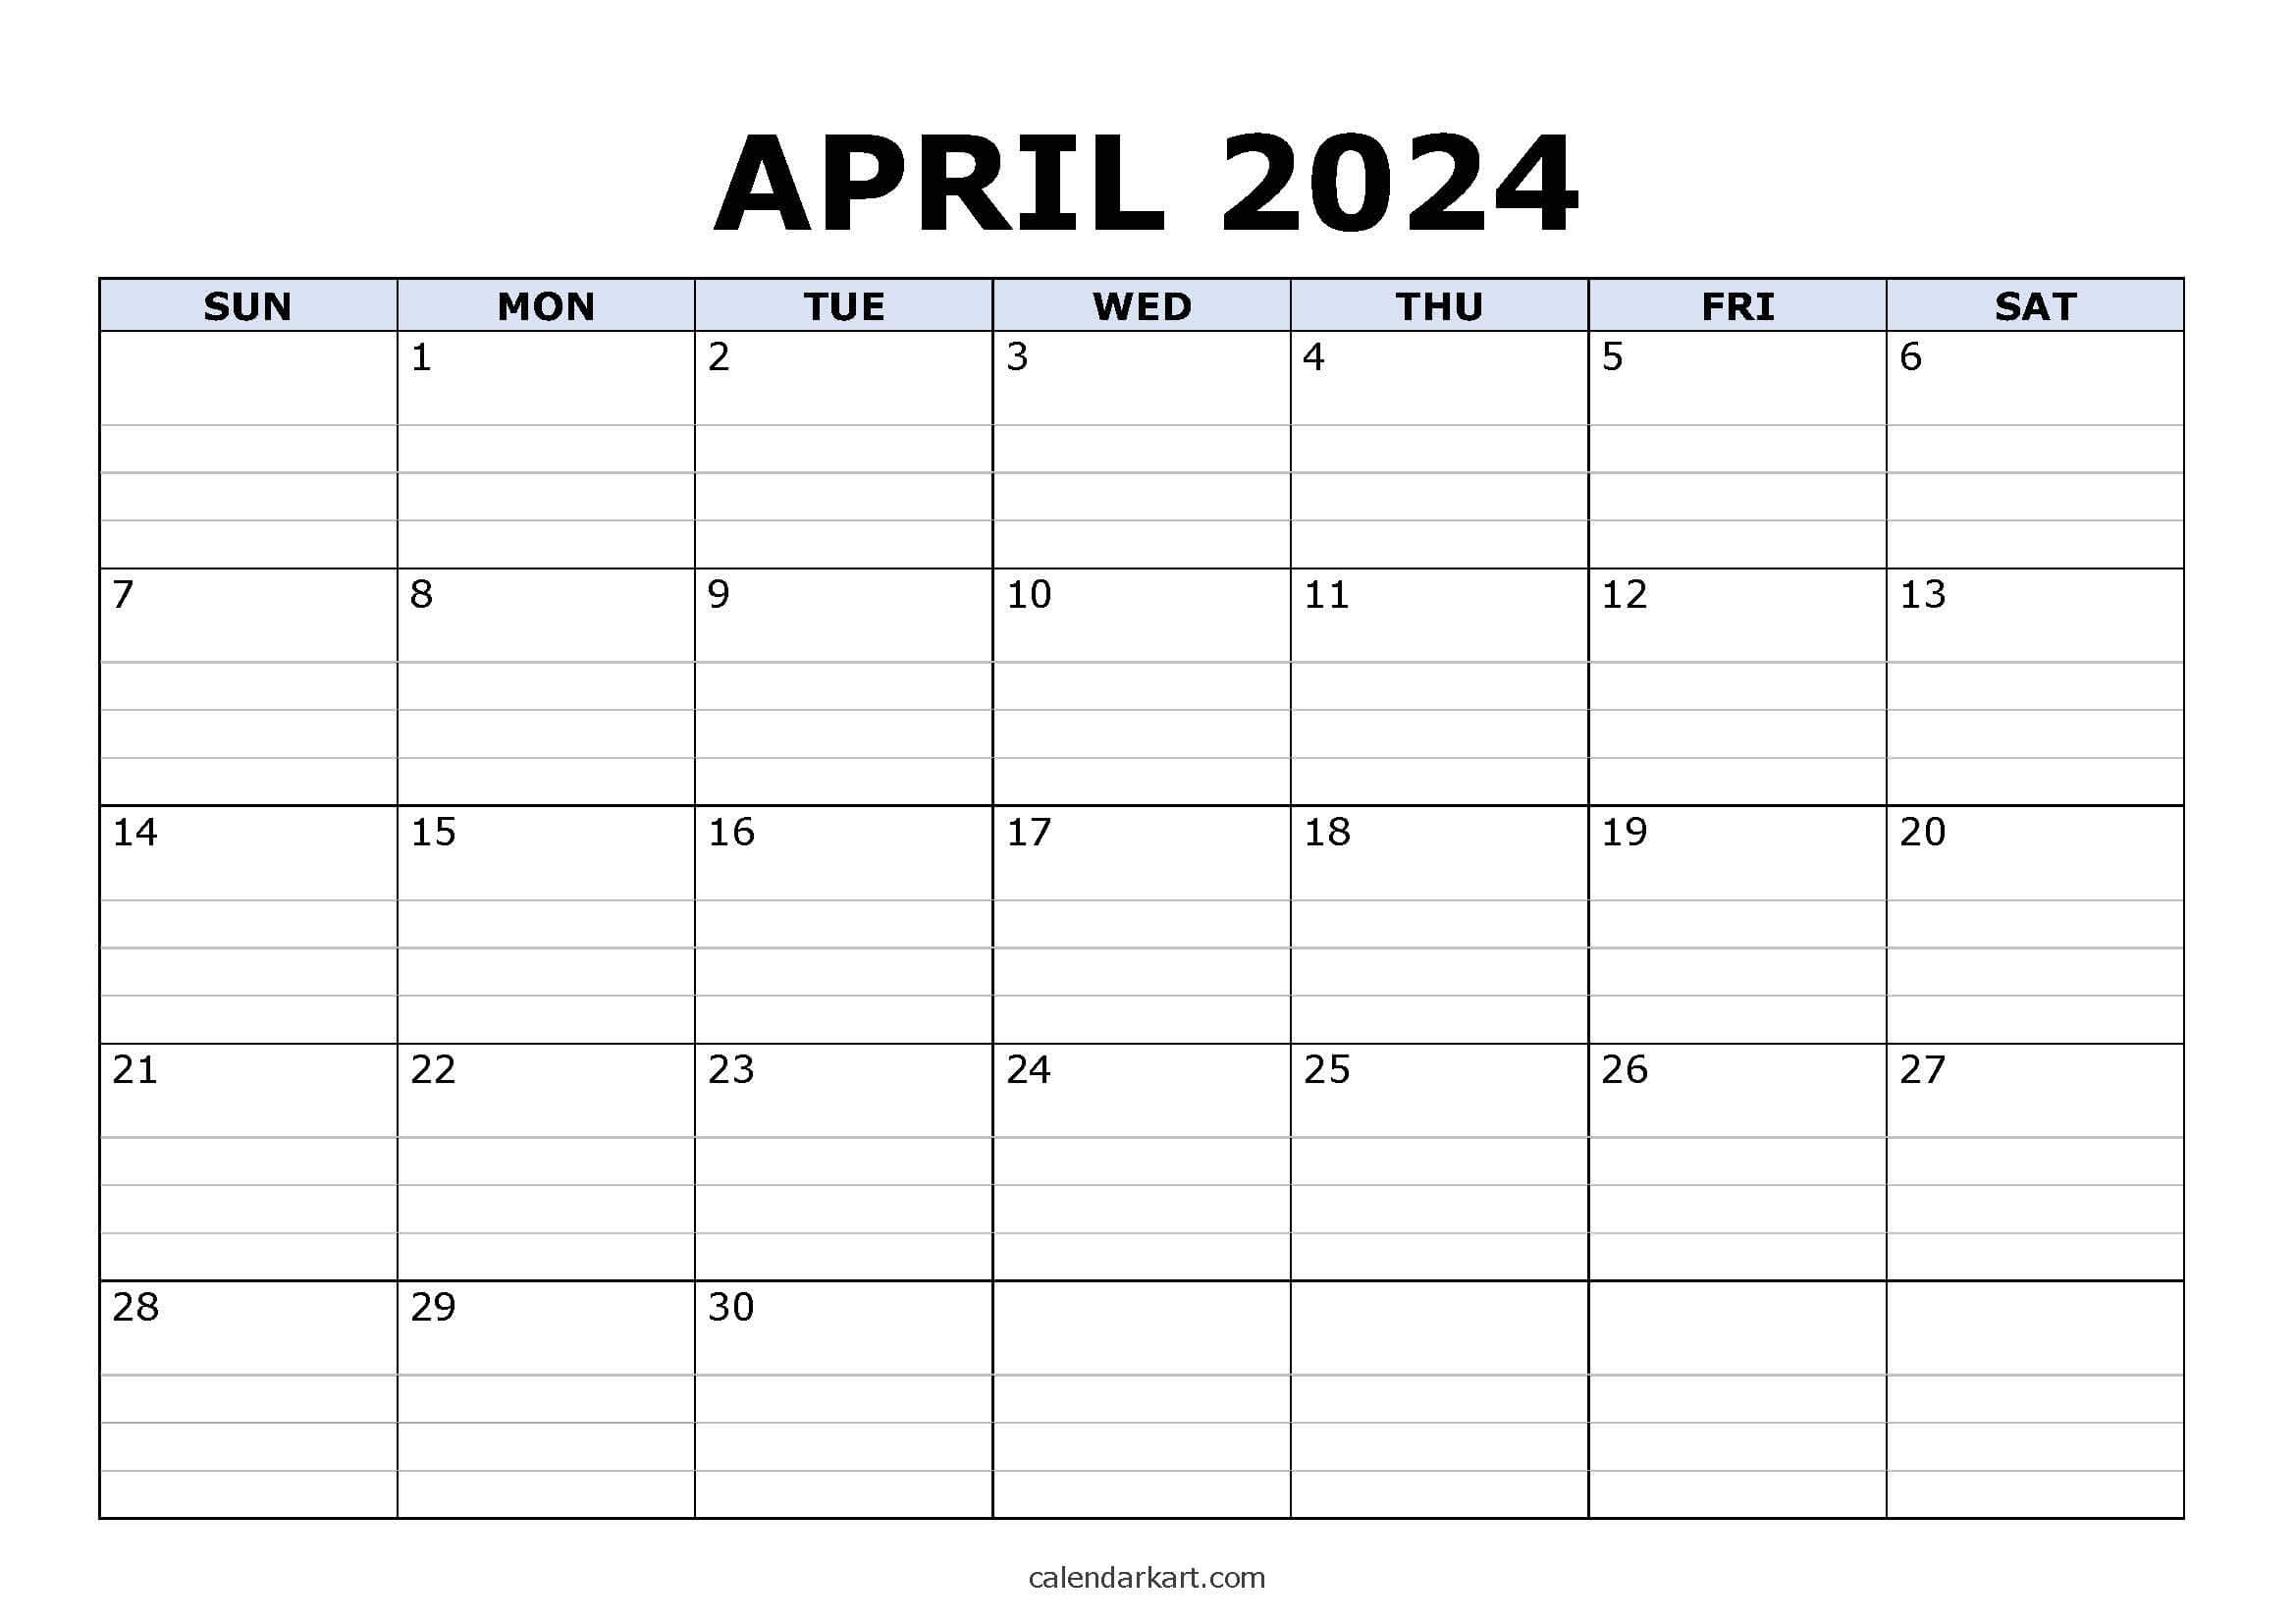 Download Free Printable April 2024 Calendar - Calendarkart regarding Free Printable April 2024 Calendar With Lines